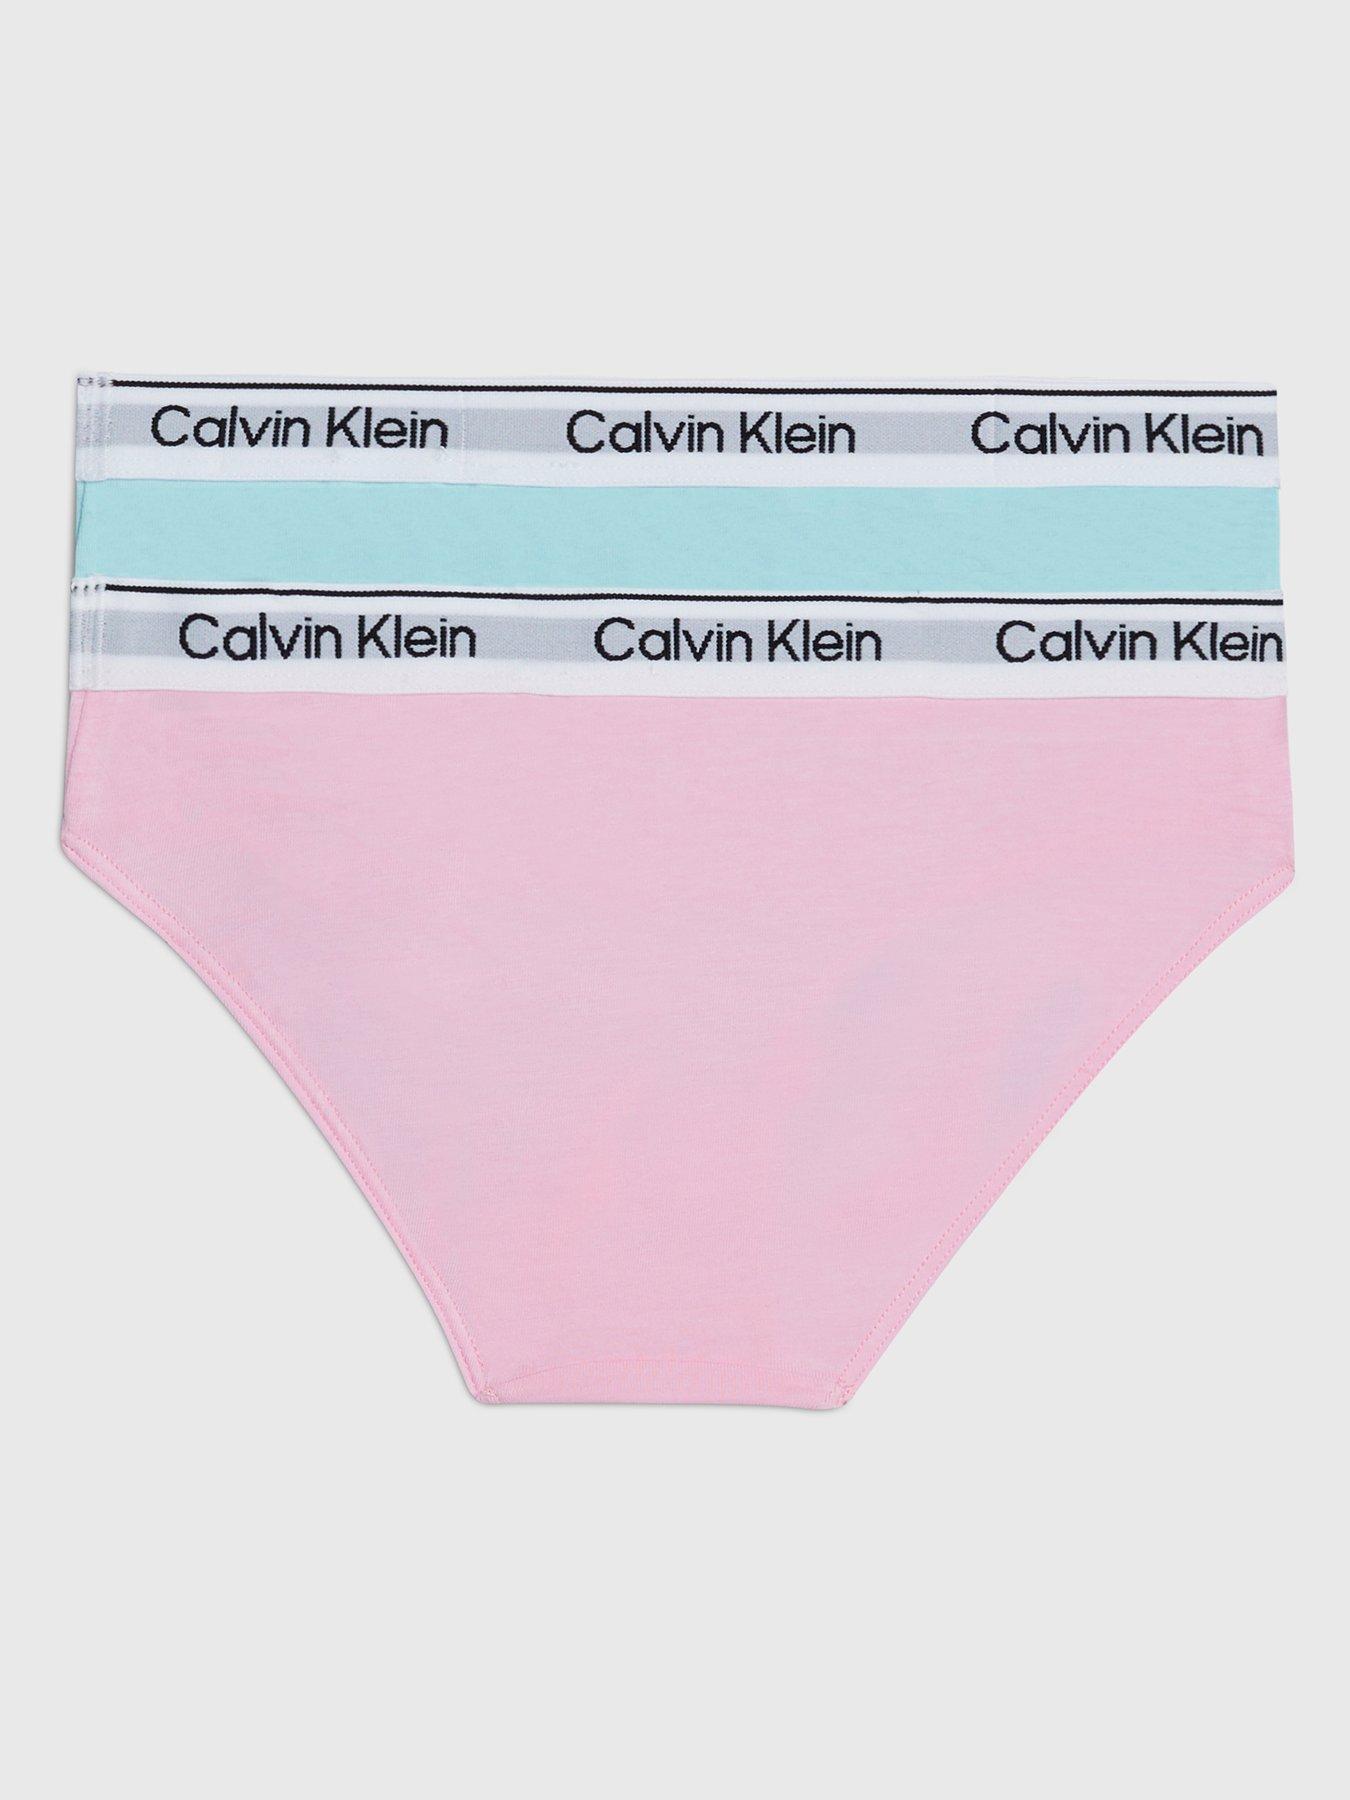 Calvin Klein Girls 2 Pack Bikini Brief Underwear Set - Mauve/Powdersky